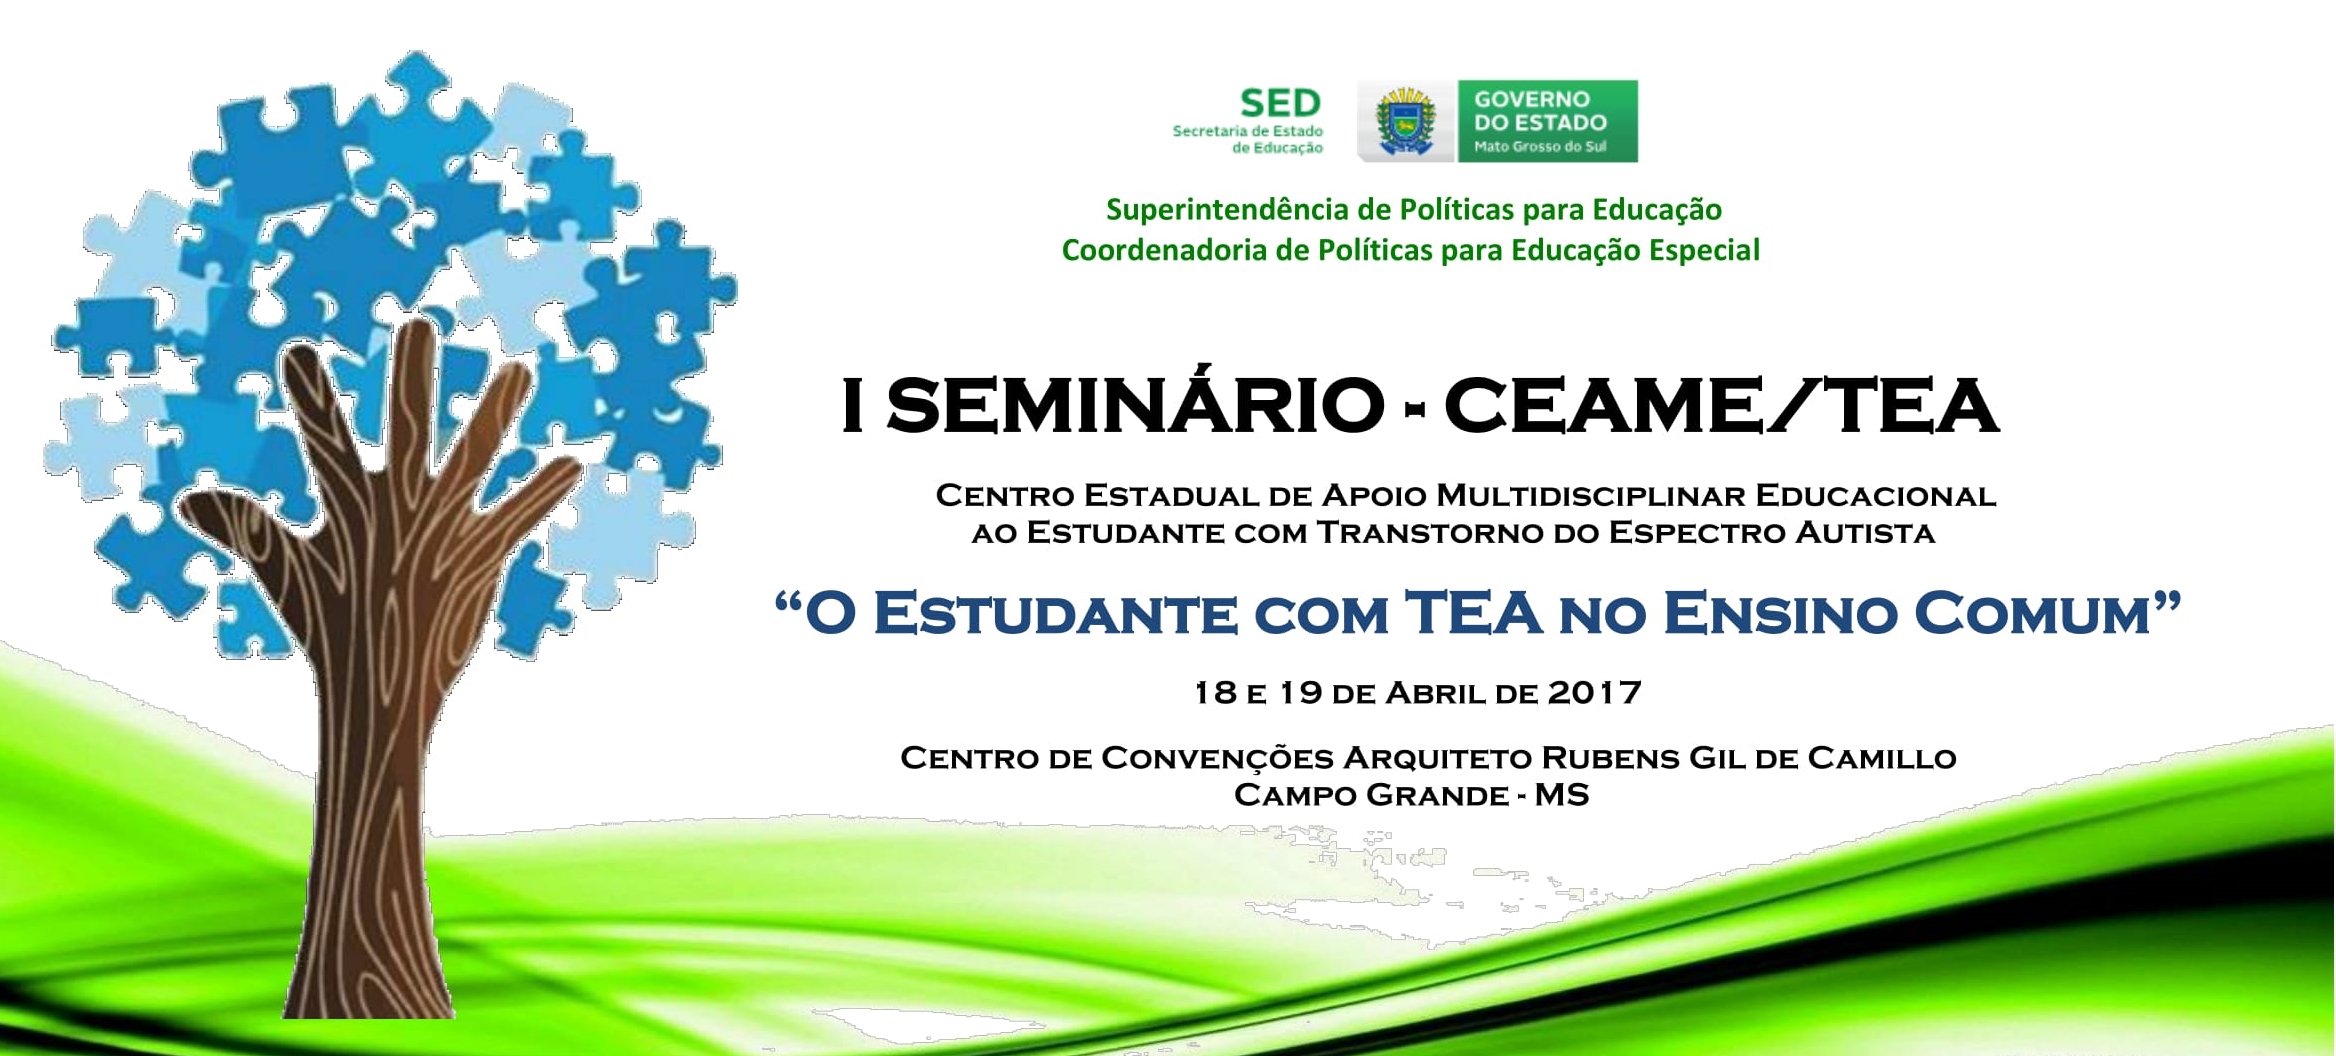 I SEMINÁRIO - CEAME/TEA | "O estudante com TEA no ensino comum"